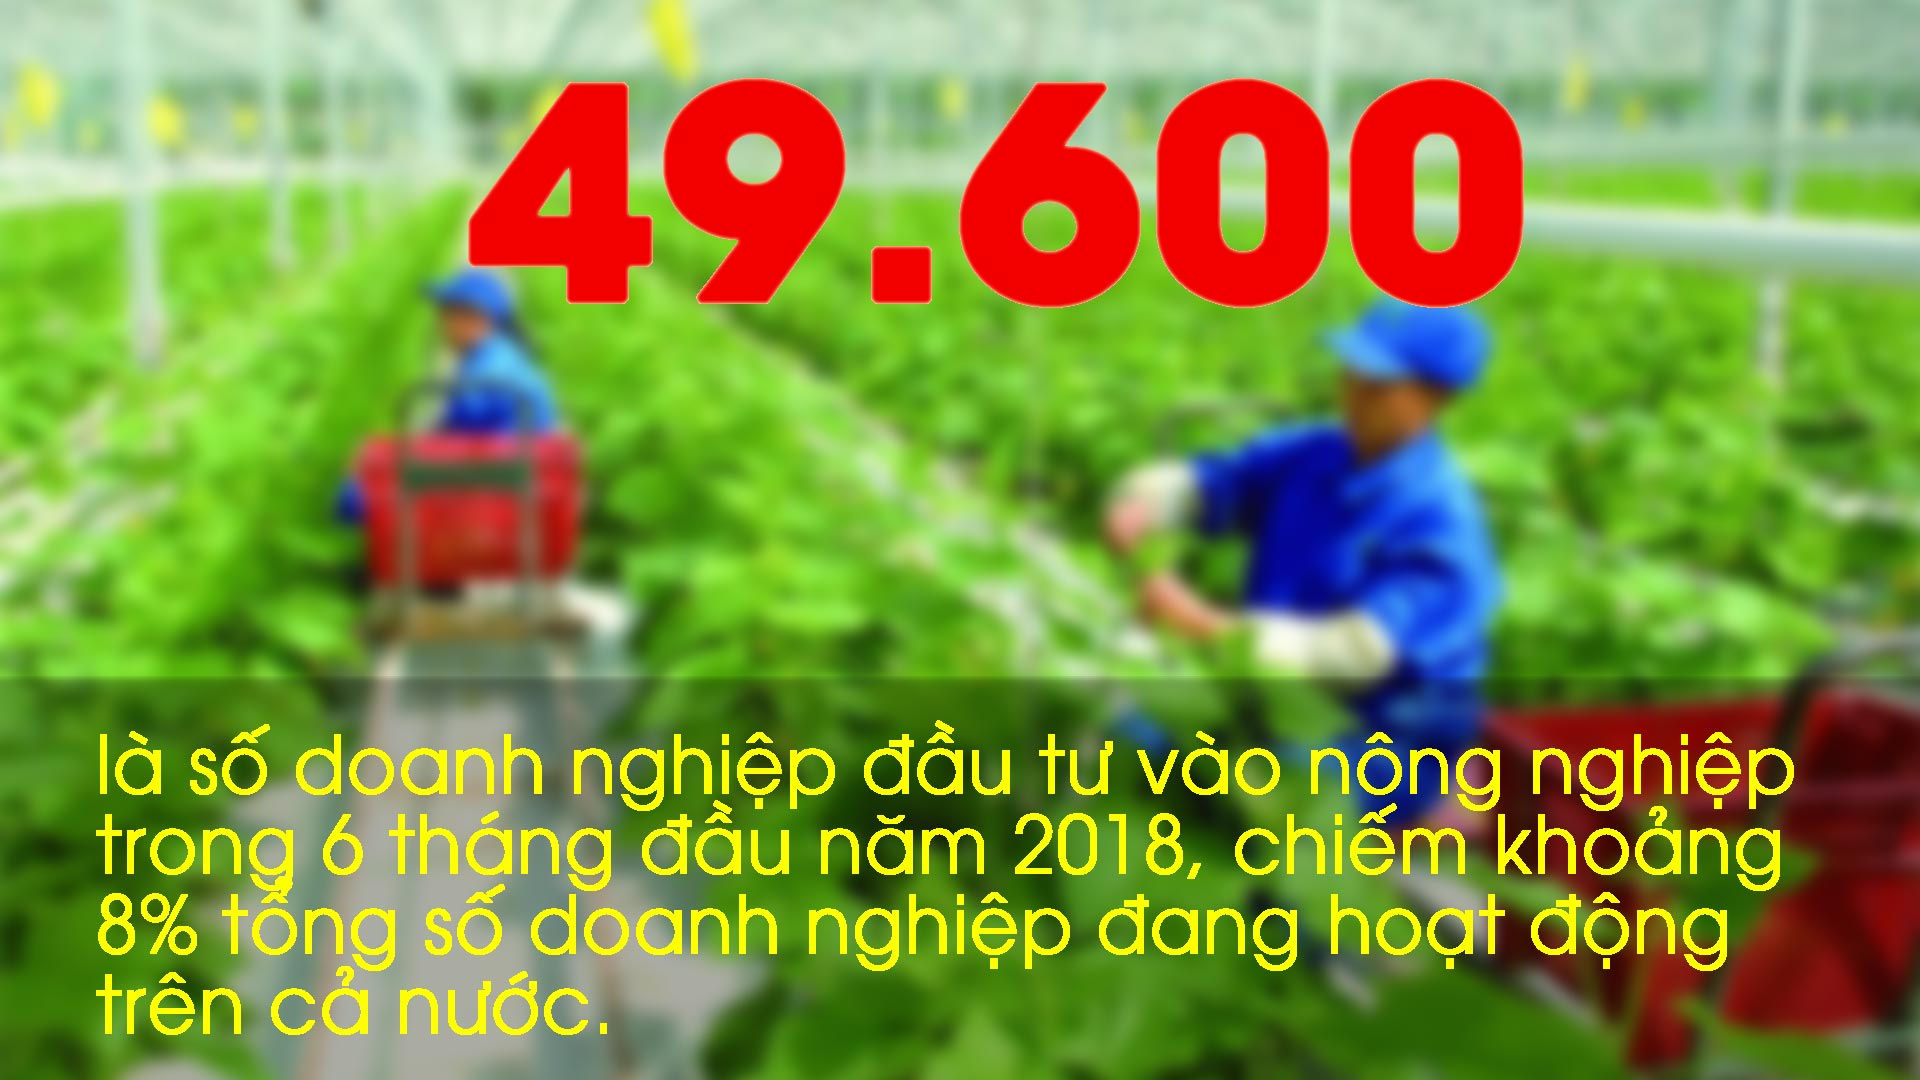 Những con số ấn tượng trong tuần: 49.600 doanh nghiệp đầu tư vào nông nghiệp 